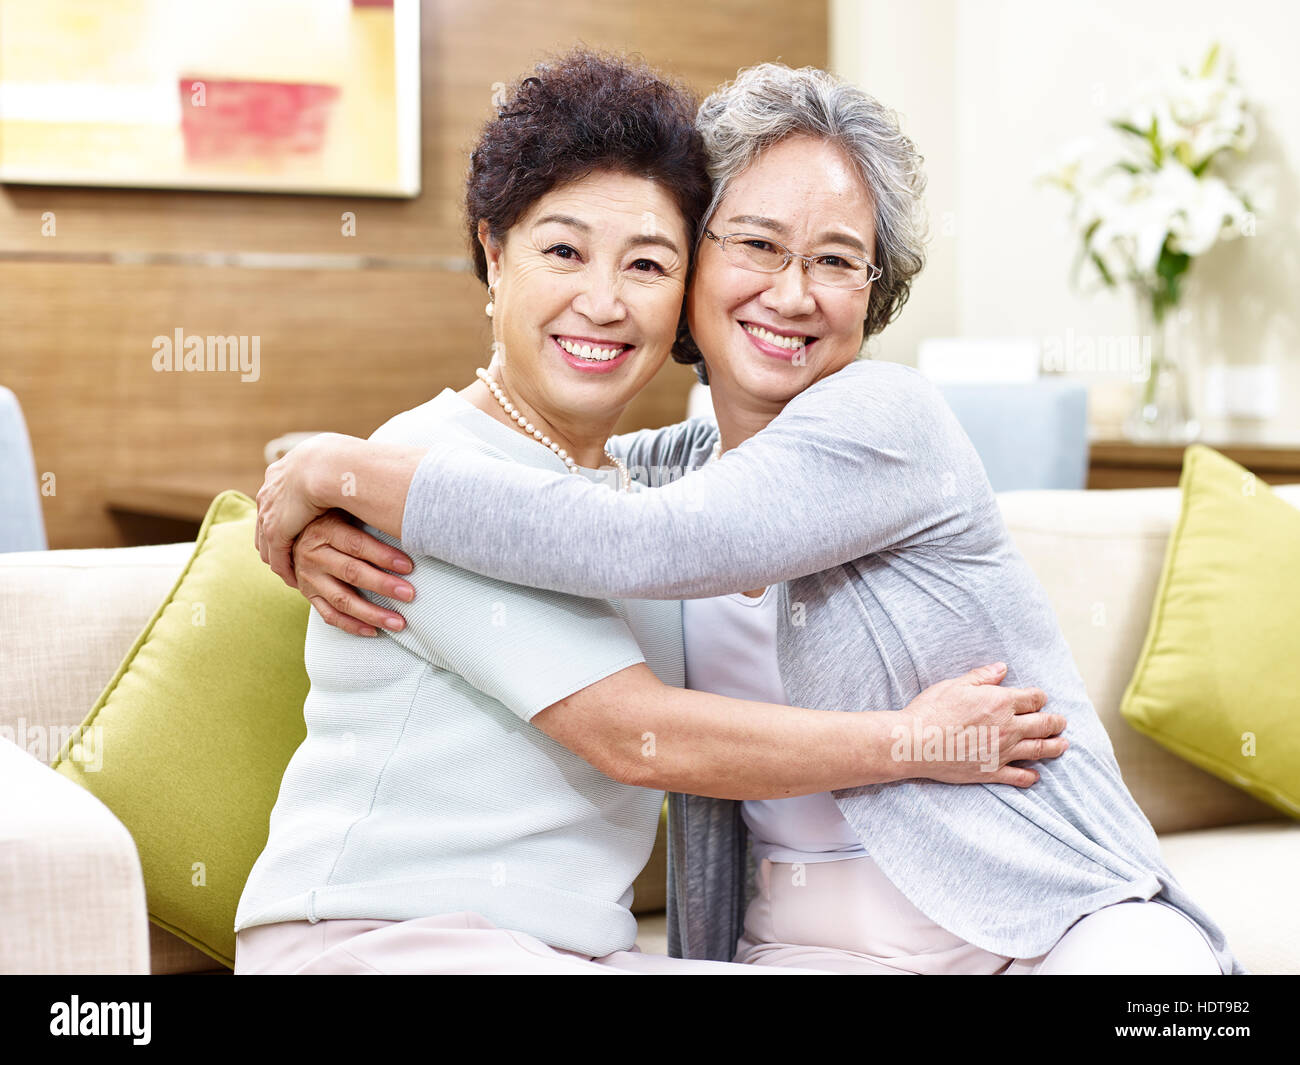 Deux hauts femmes asiatiques sitting on couch étreindre l'autre, heureux et souriant Banque D'Images